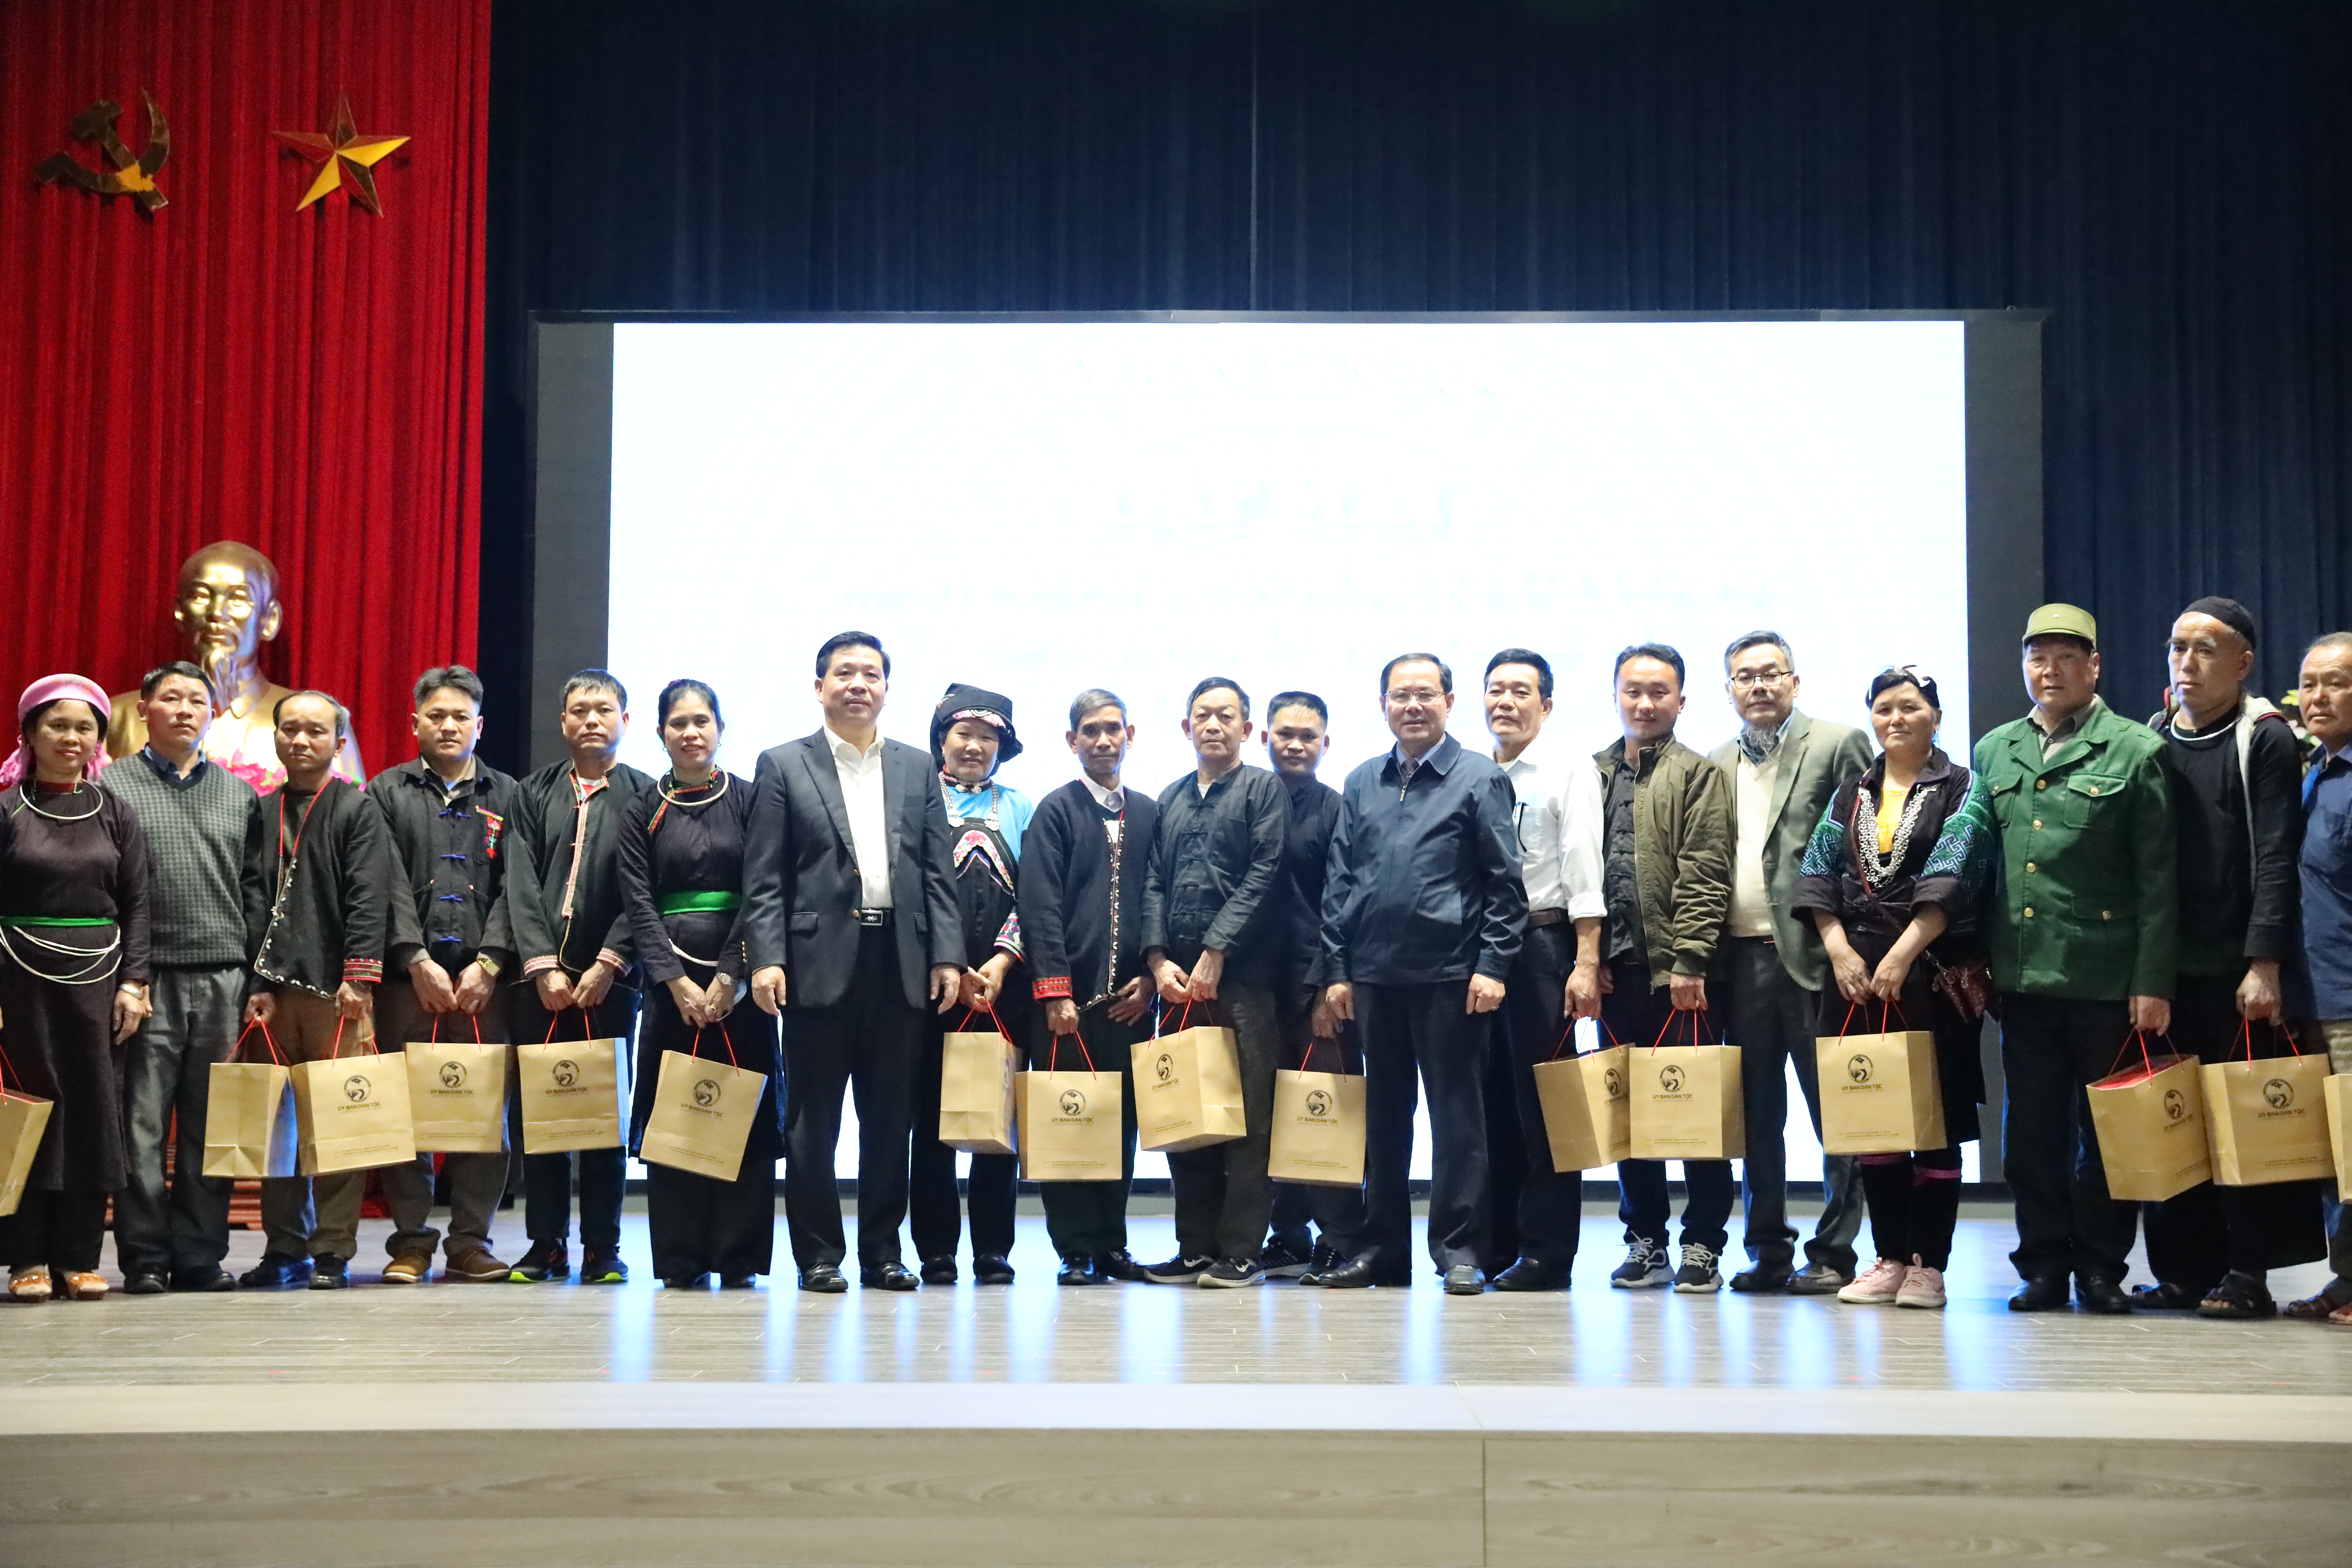 Thứ trưởng, Phó Chủ nhiệm UBDT Lê Sơn Hải tặng quà của UBDT cho các đại biểu Người có uy tín tỉnh Lào Cai